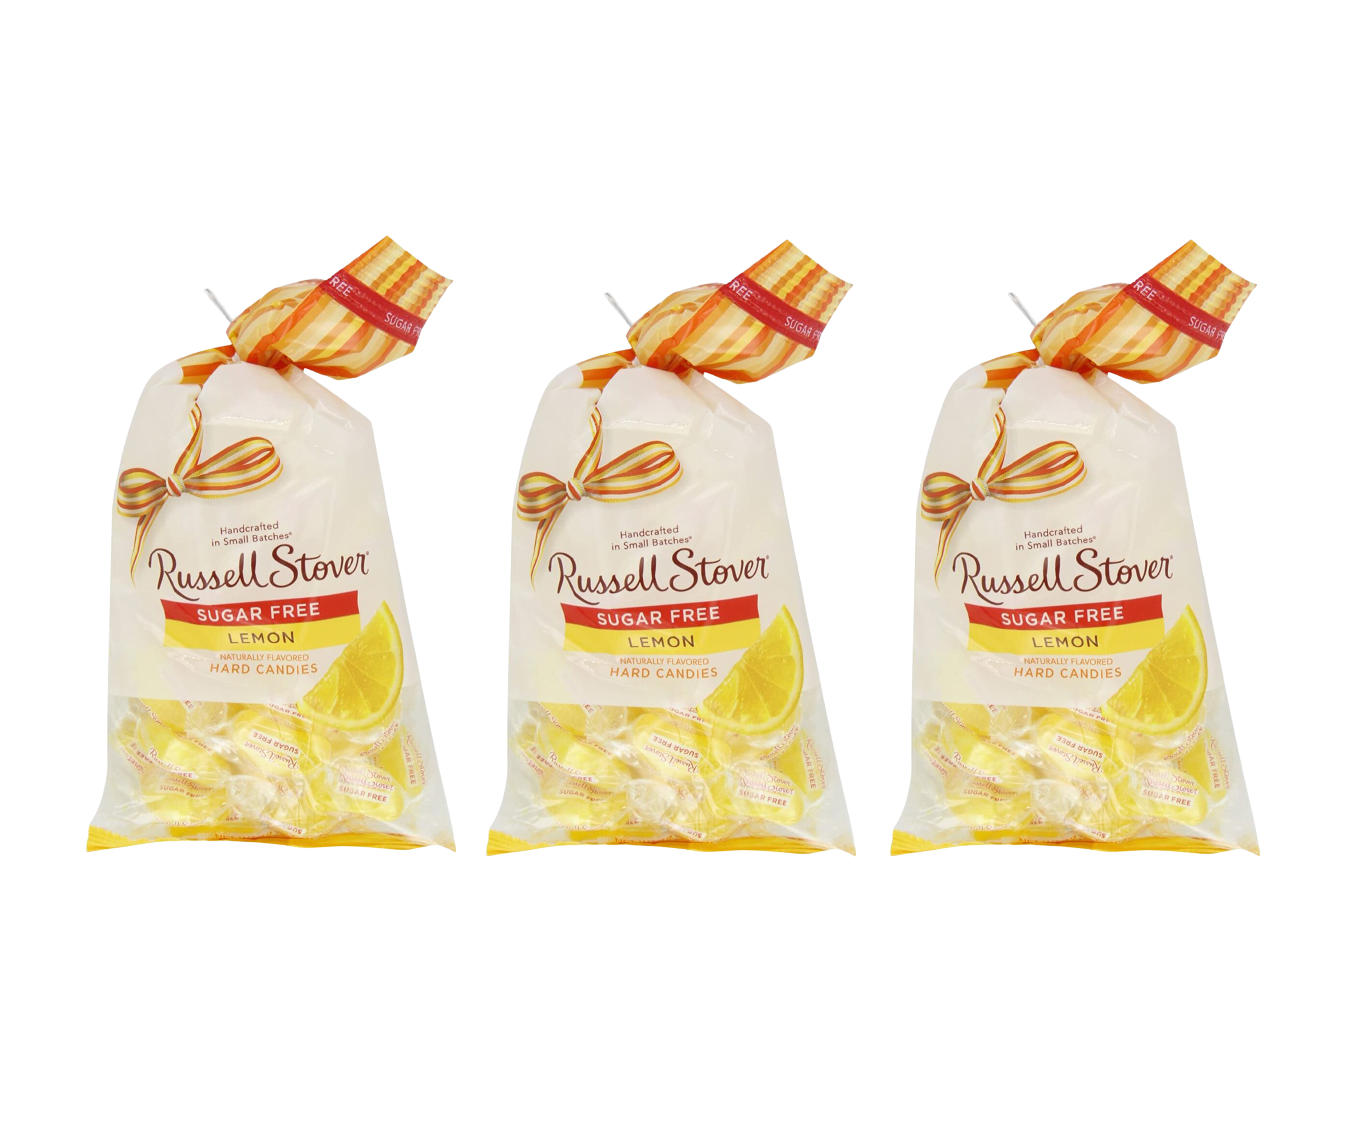 #Flavor_Lemon #Size_3 Bags